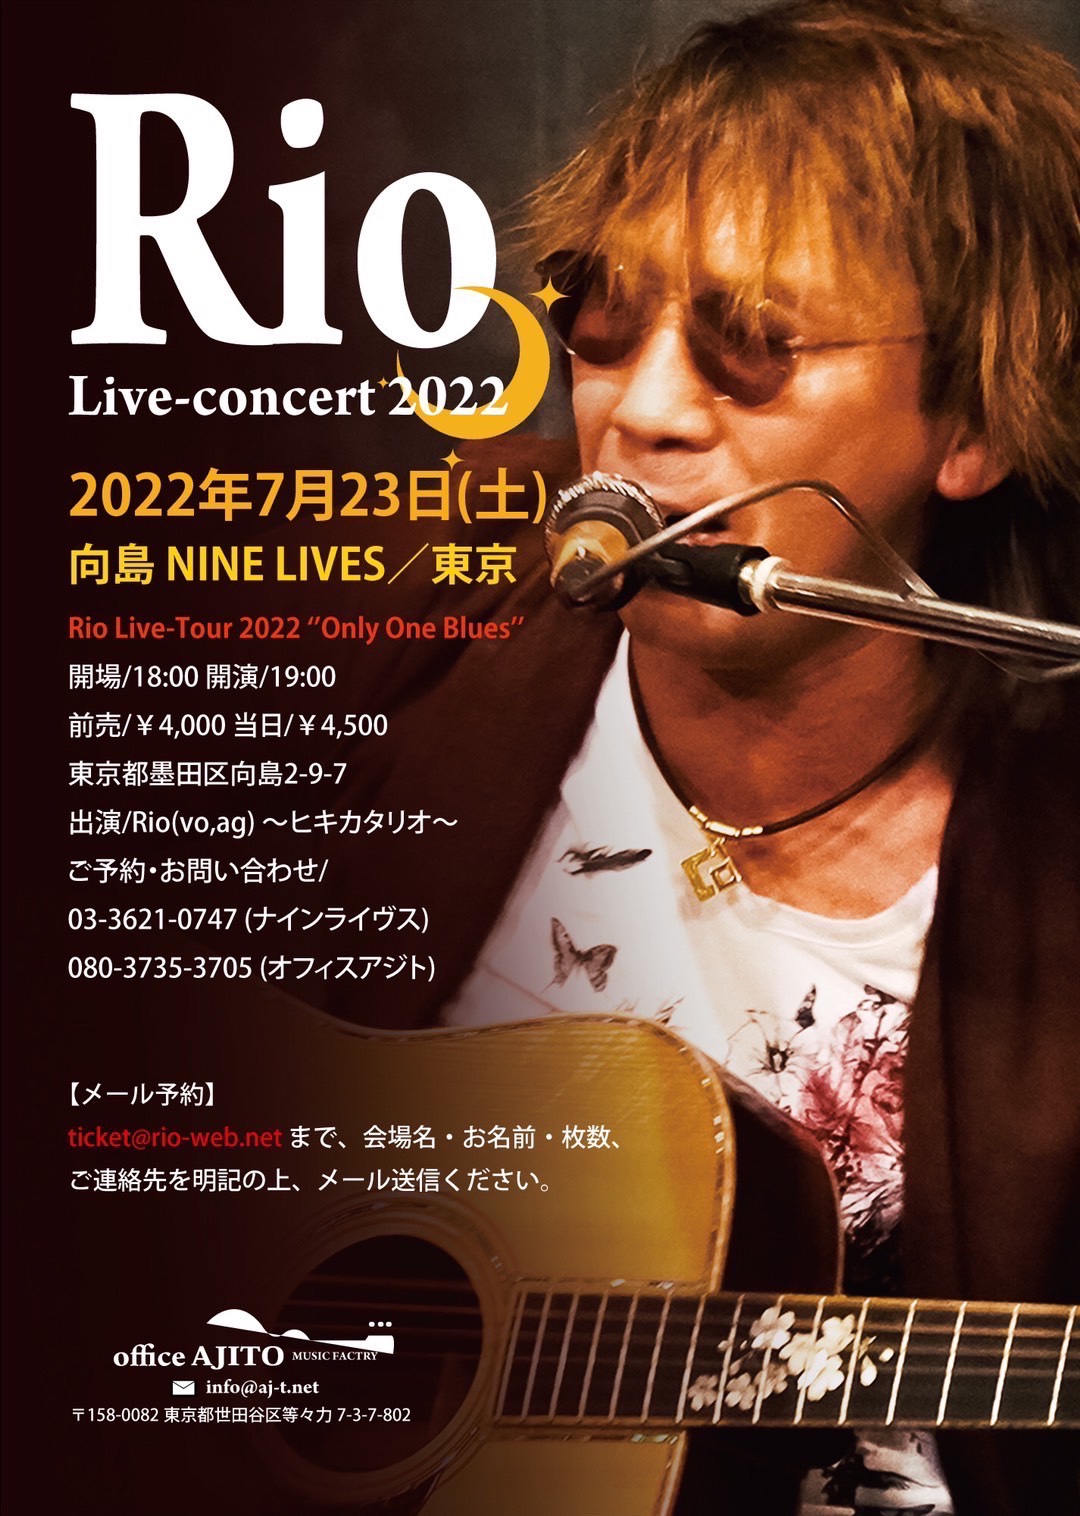 【満員御礼】Rio Live Concert 2022